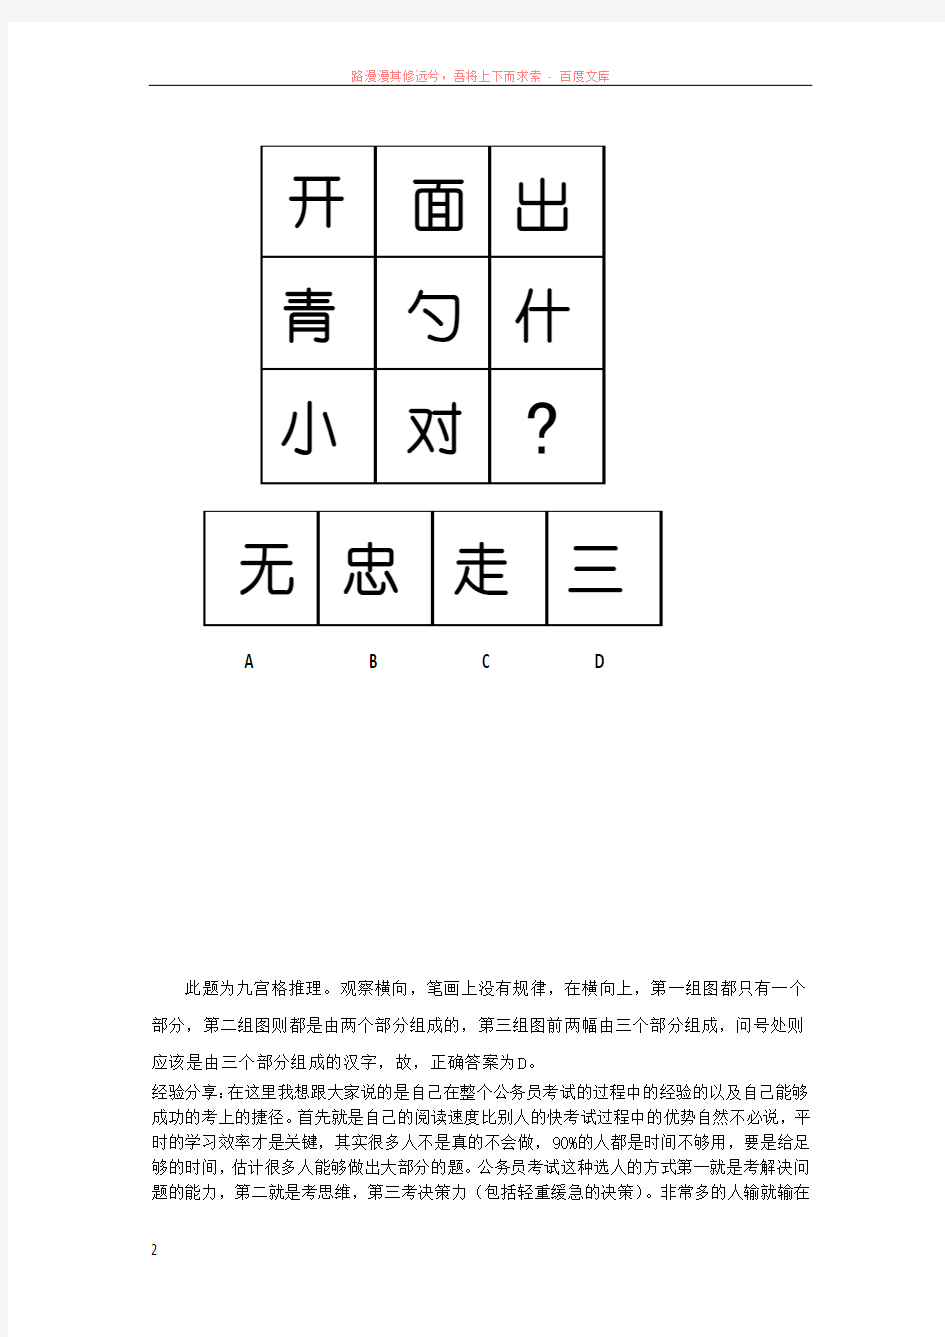 公务员考试辅导图形推理破解之汉字问题 